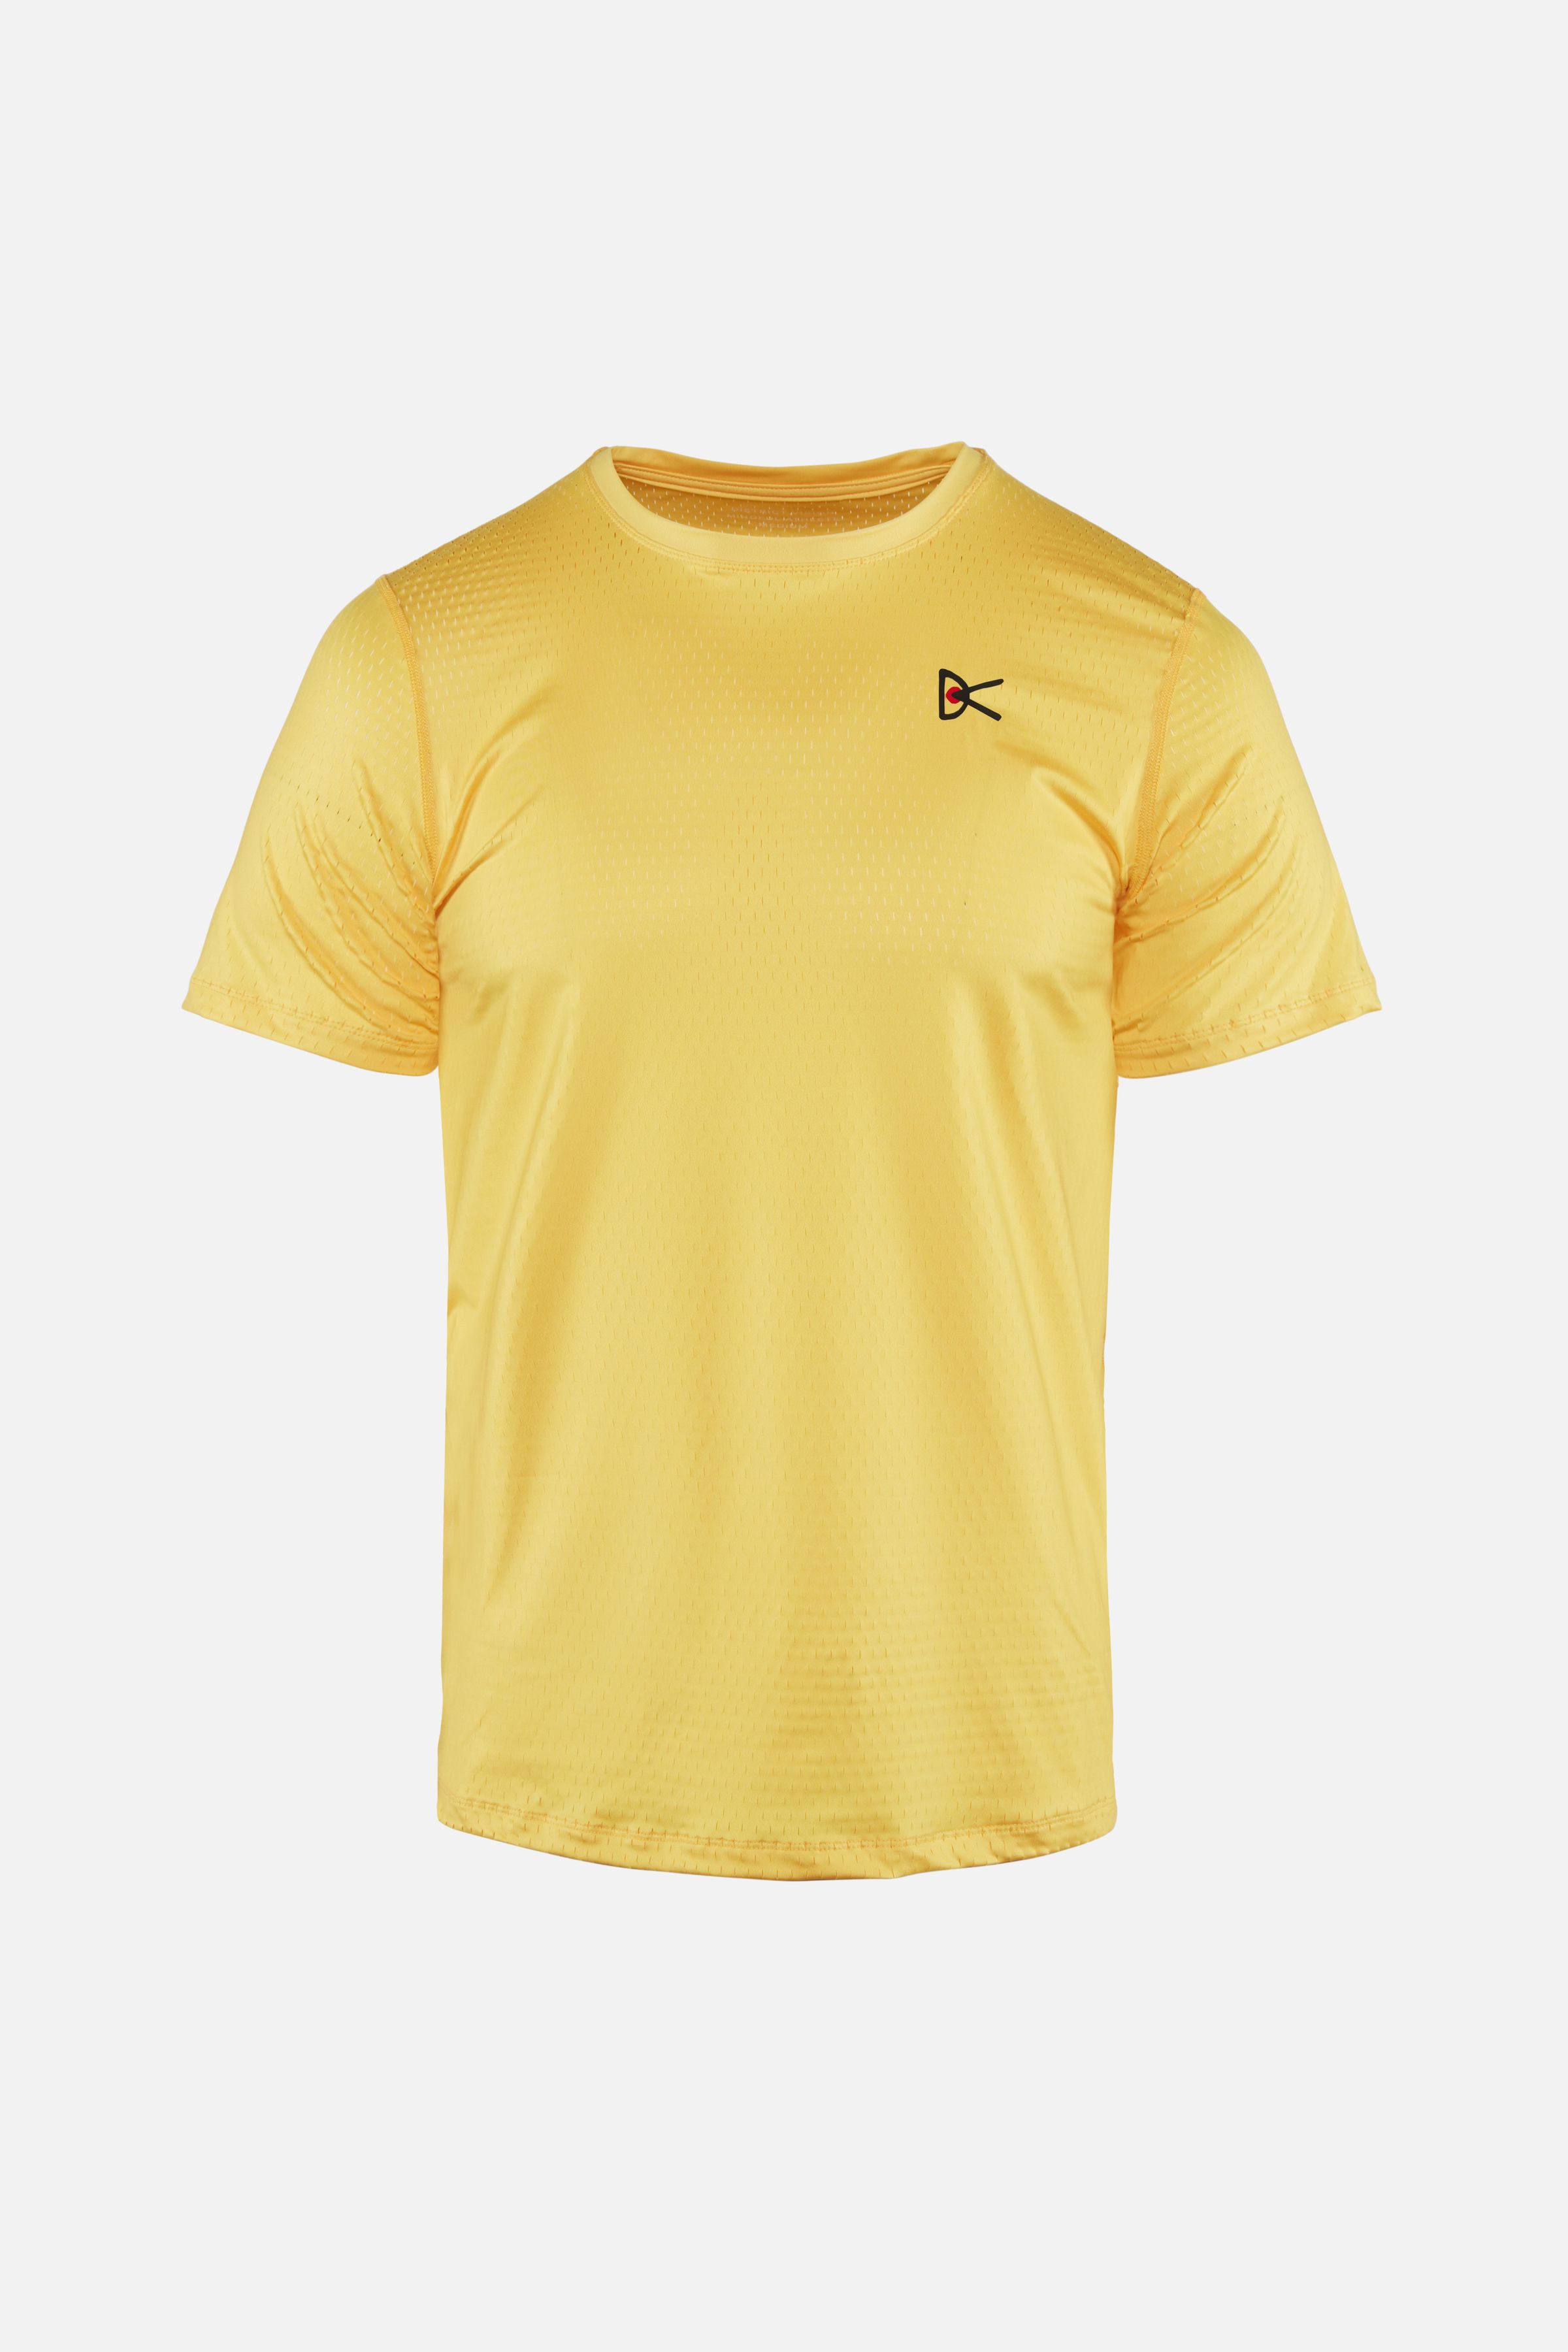 Air–Wear Short Sleeve T-Shirt, Sunflower